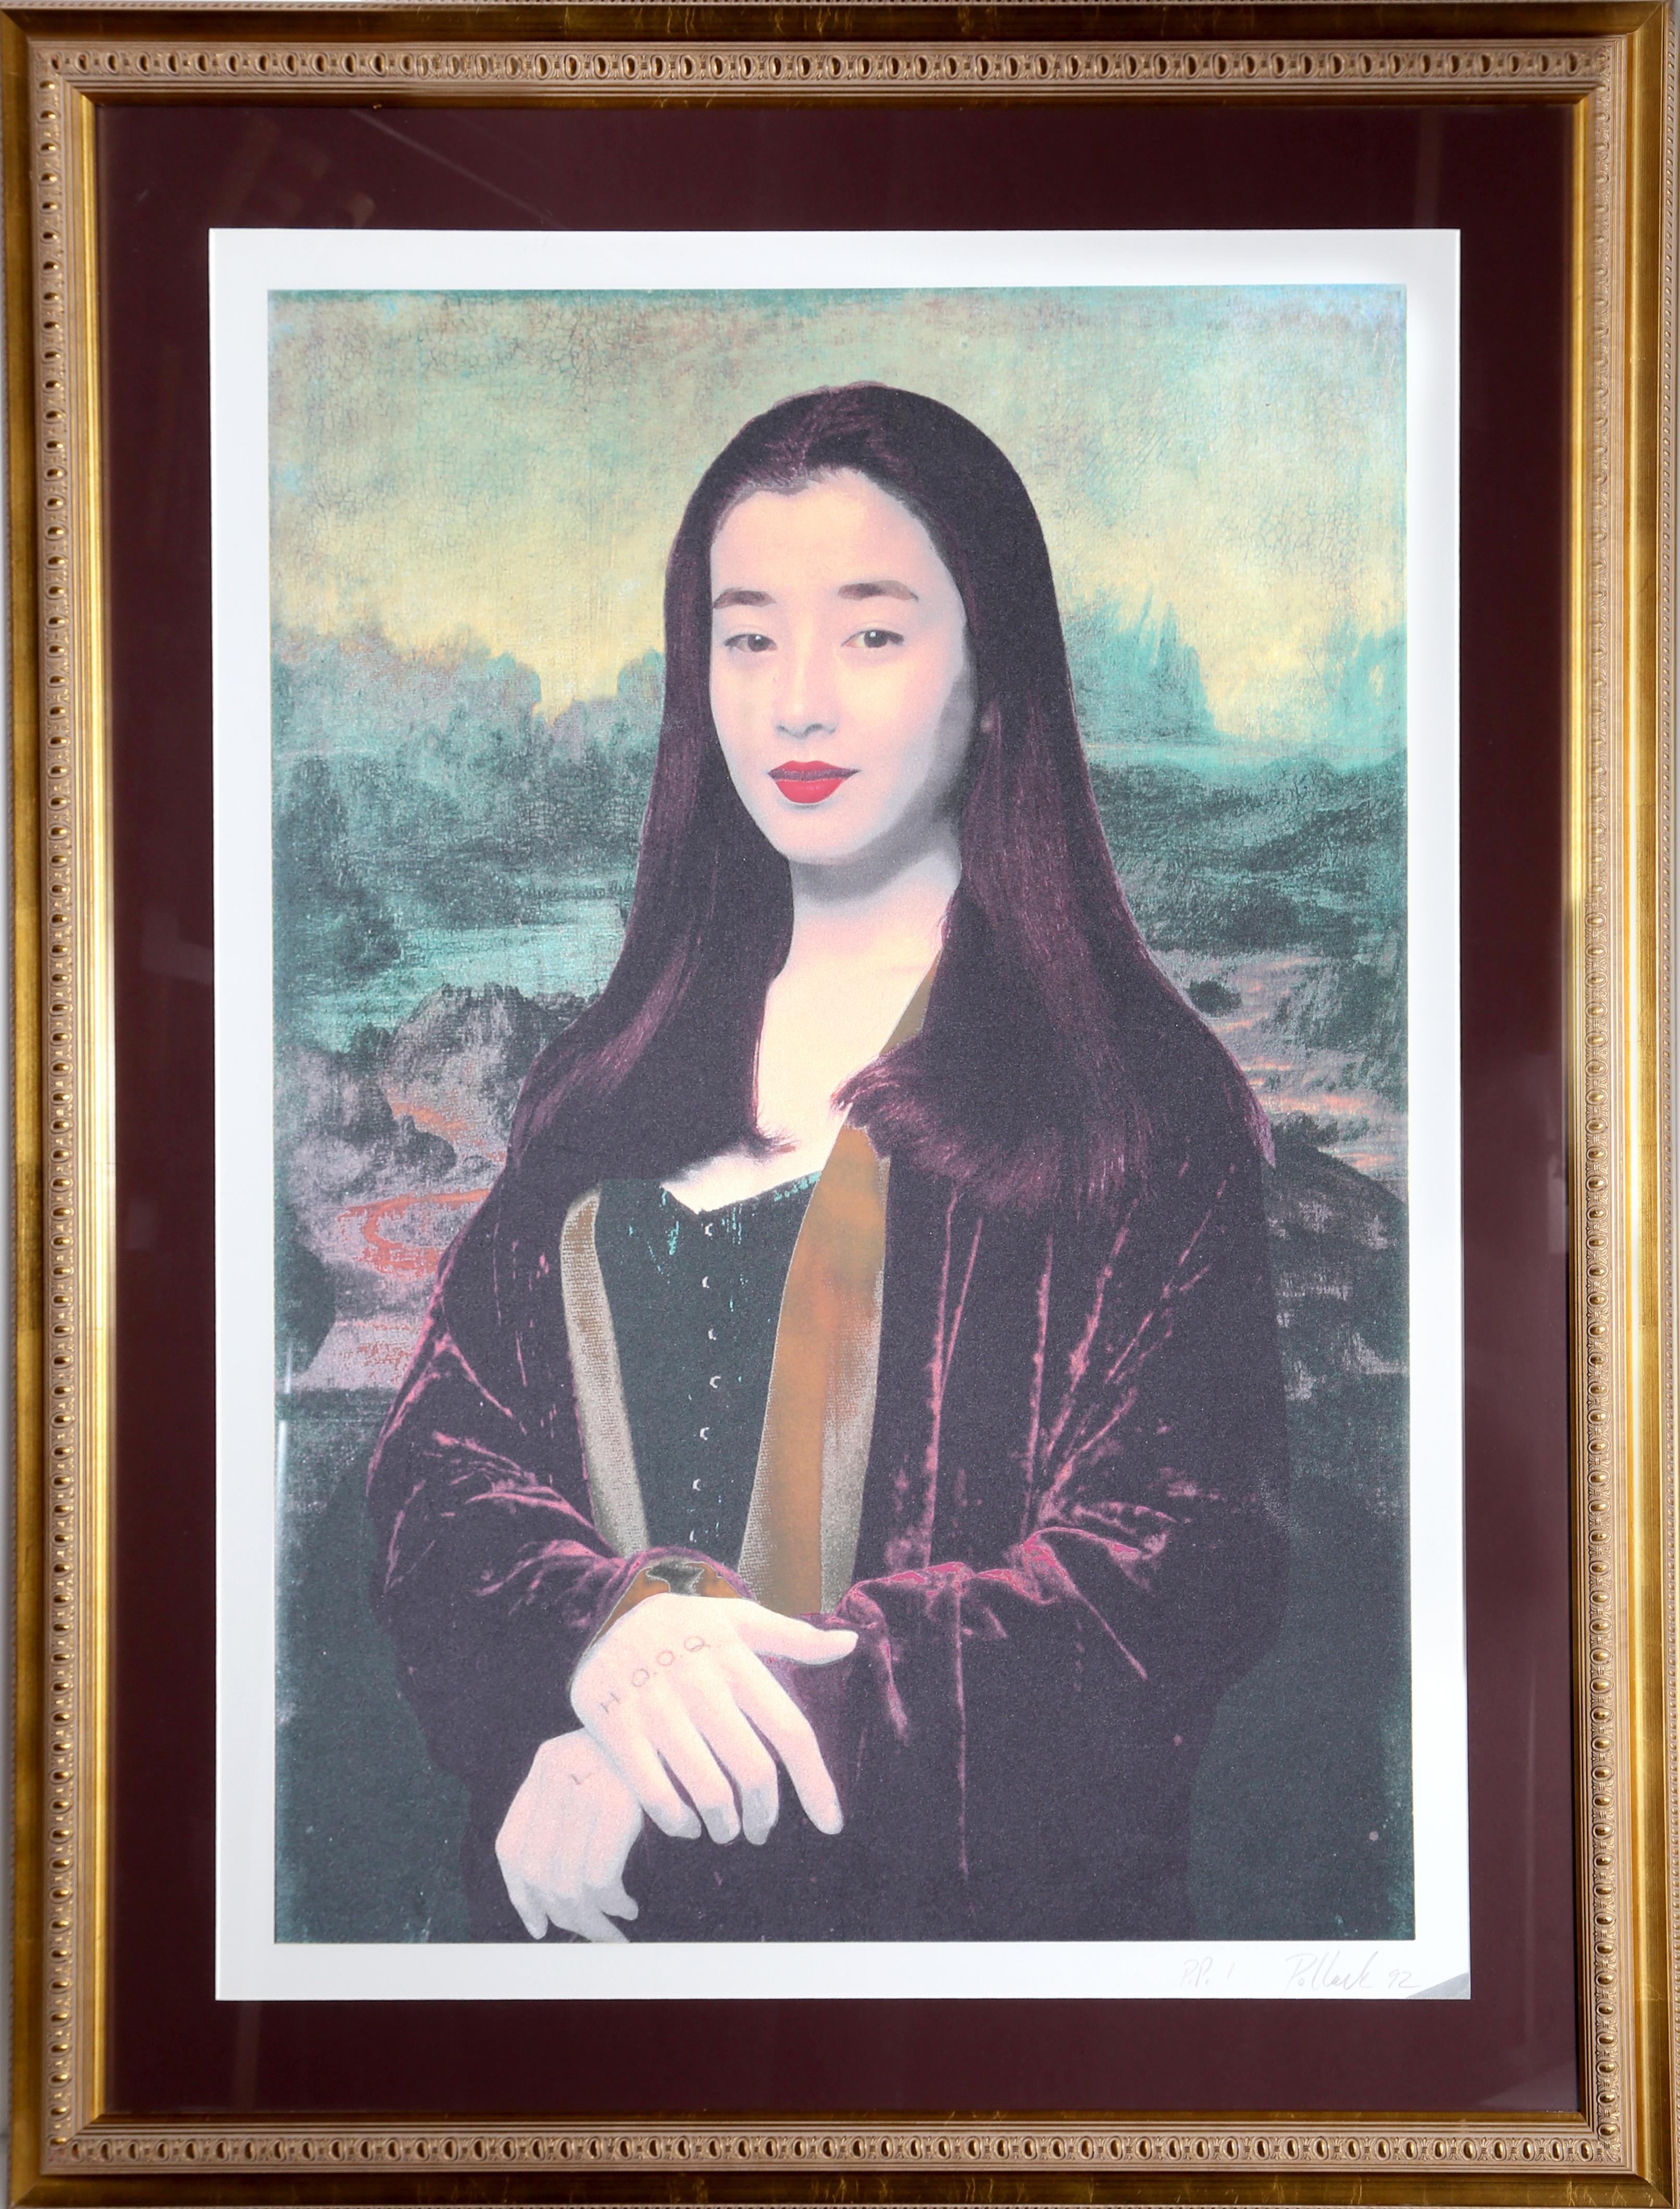 Rie Miyazawa Mona Lisa (nach da Vinci)
Steven Pollack
Datum: 1992
Lithographie und Superfine Glitter auf Papier, mit Bleistift signiert
Ausgabe von PP 1
Bildgröße: 39,5 x 28 Zoll
Größe: 43 Zoll x 31 Zoll (109,22 cm x 78,74 cm)
Rahmengröße: 54 x 41